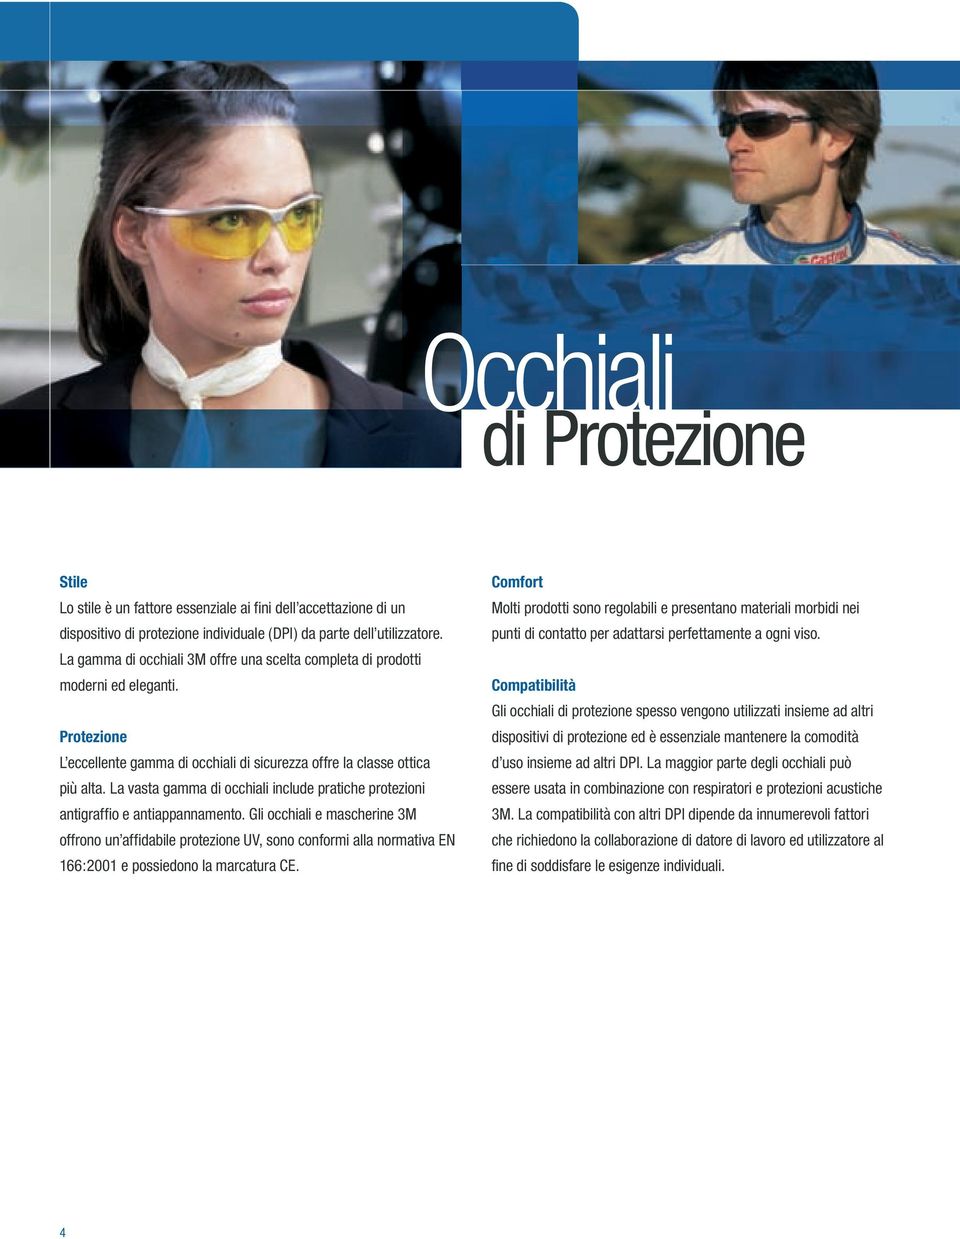 La vasta gamma di occhiali include pratiche protezioni antigraffio e antiappannamento.